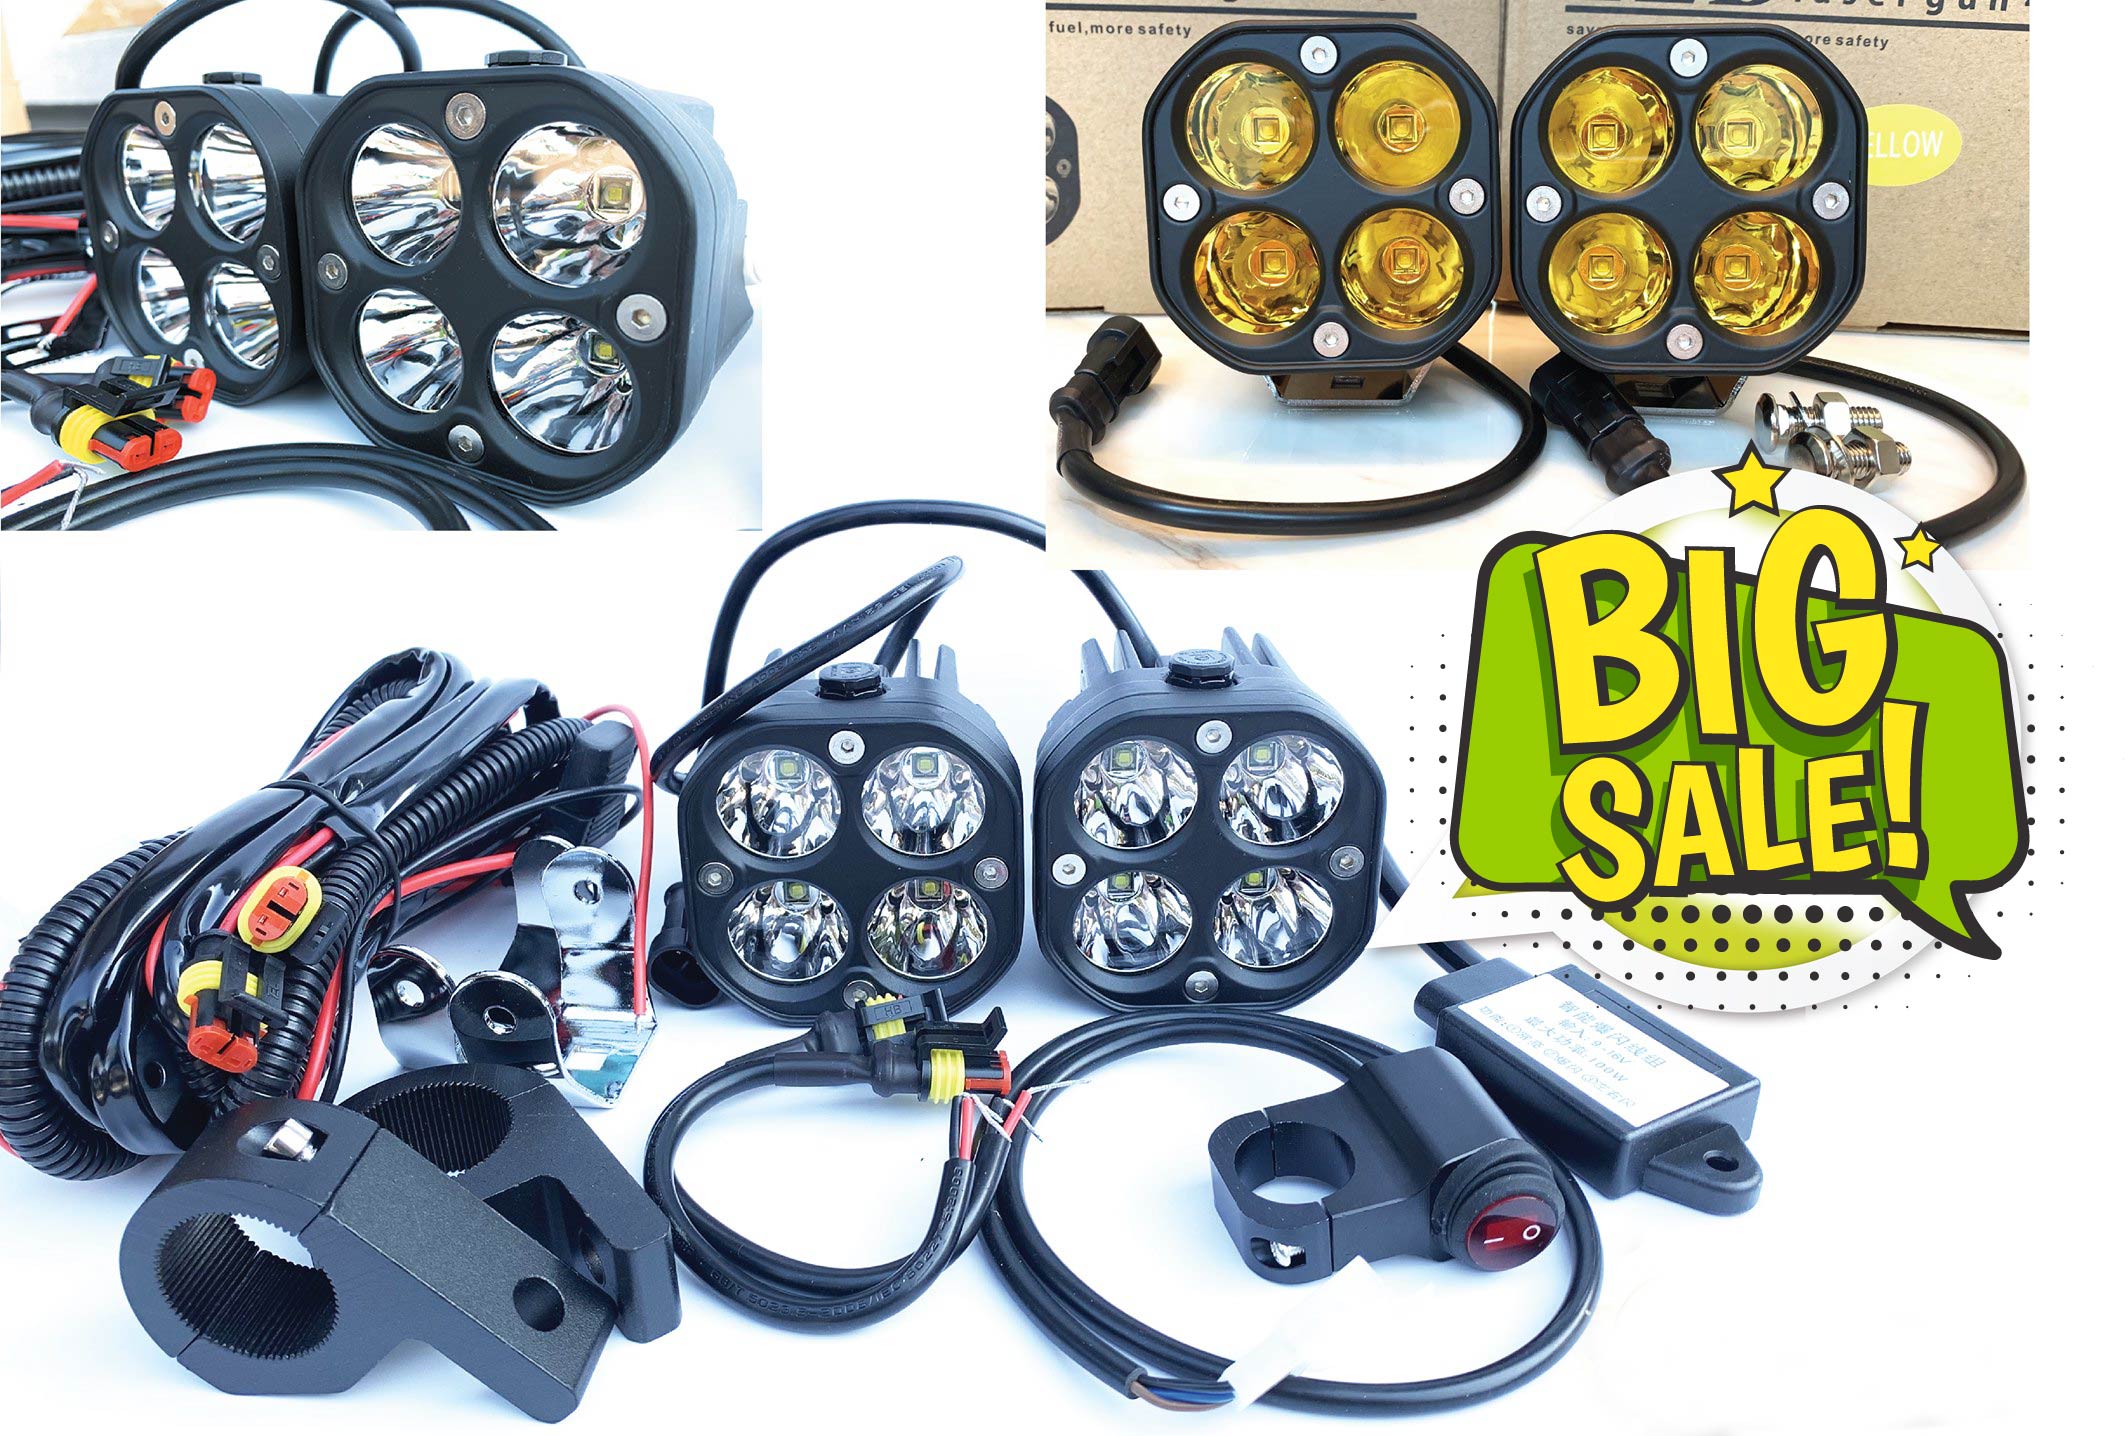 (แสงเหลือง)สปอรต์ไลท์ 40W LED Super Bright Motorcycle Driving Lamp1คู่ พร้อมชุดติดตั้ง ครบชุด บอดีอลูไม่ใช่พลาสติก